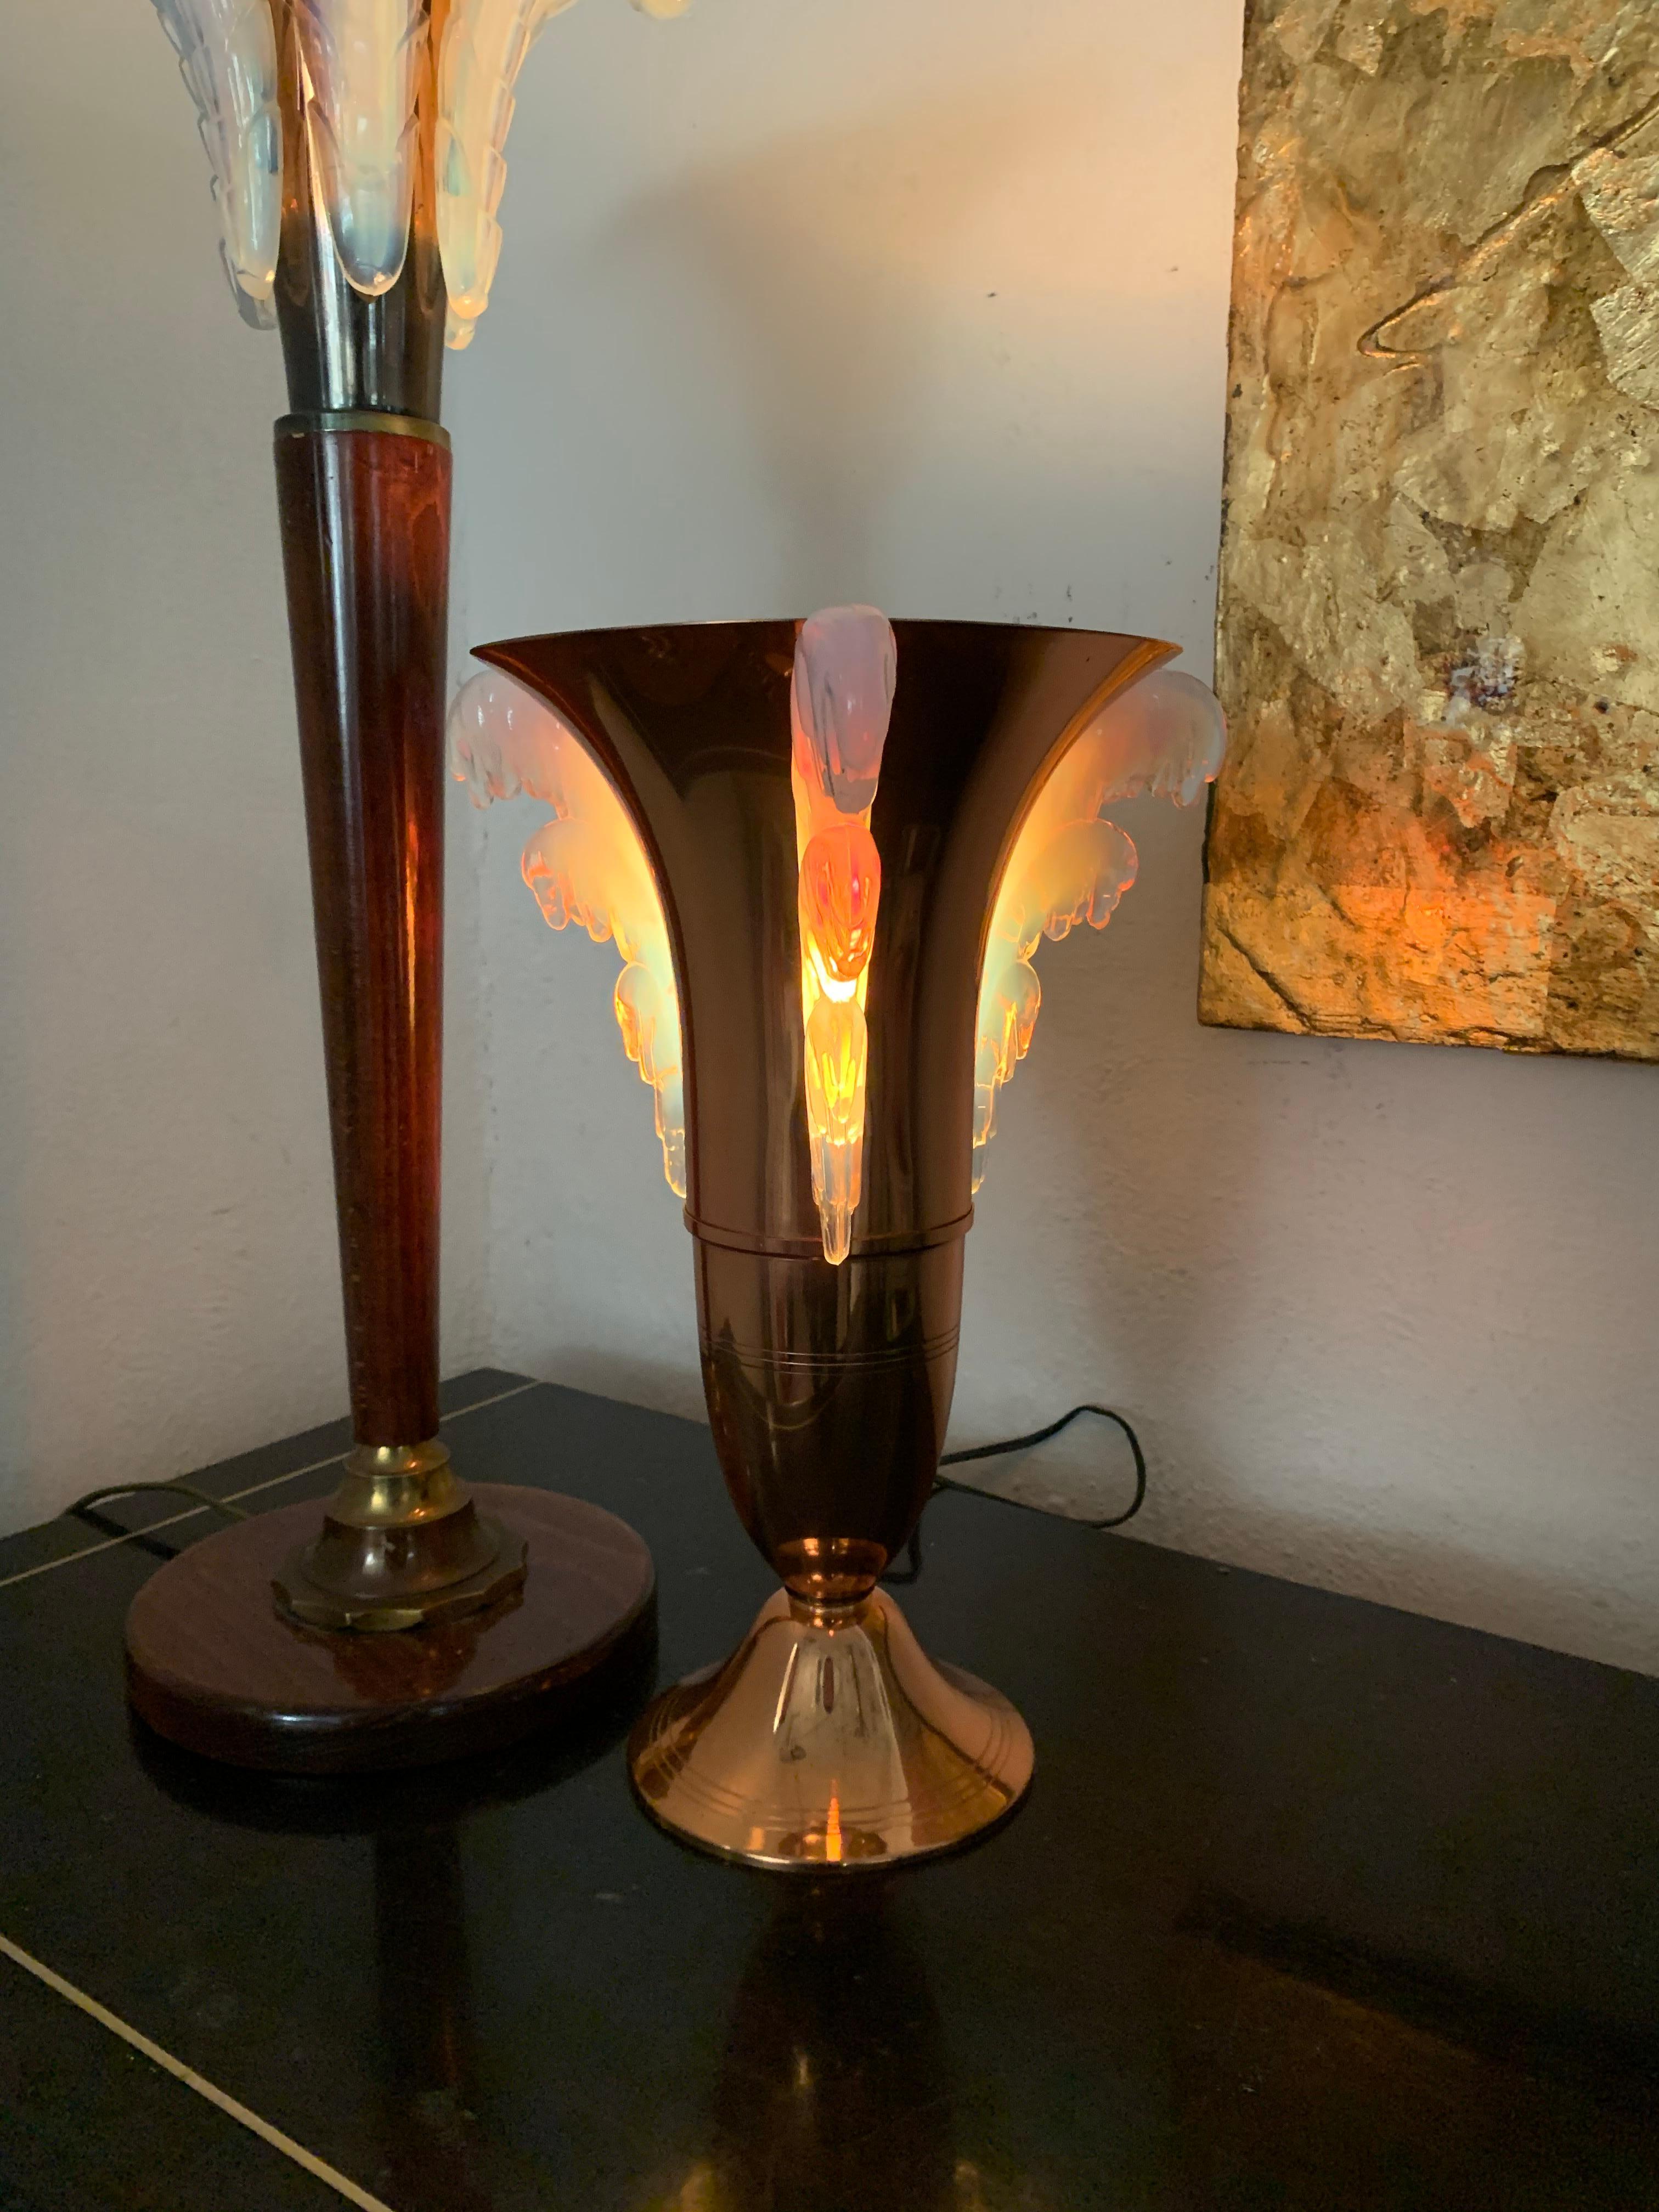 Belle lampe de table Art Déco attribuée à Petitot, verre signé EZAN, France, circa 1940s
Réalisé en cuivre et verre pressé opalescent bleu.